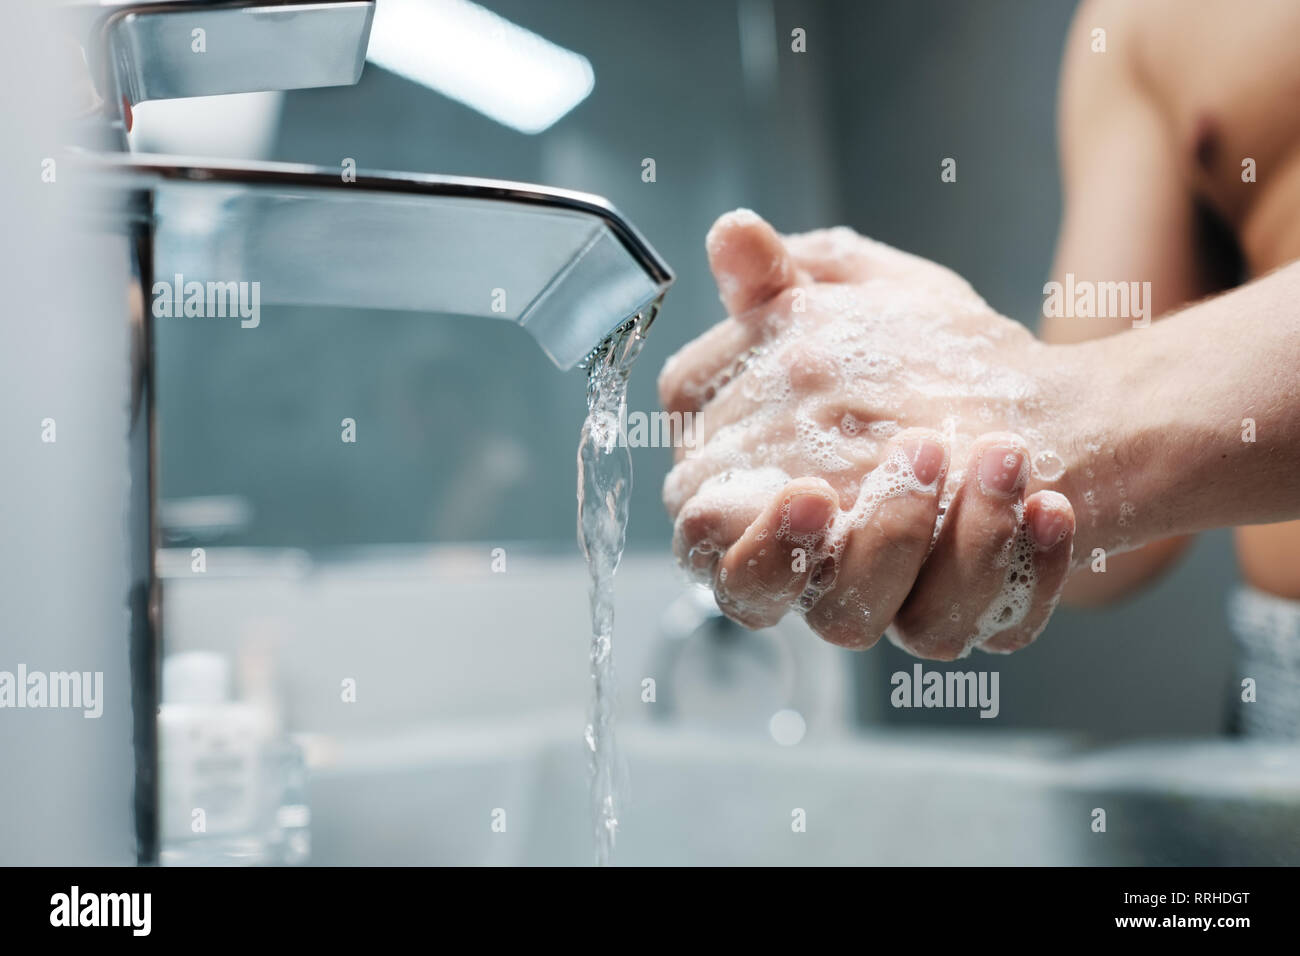 Man Waschen der Hände mit Wasser und Seife im Bad Stockfoto